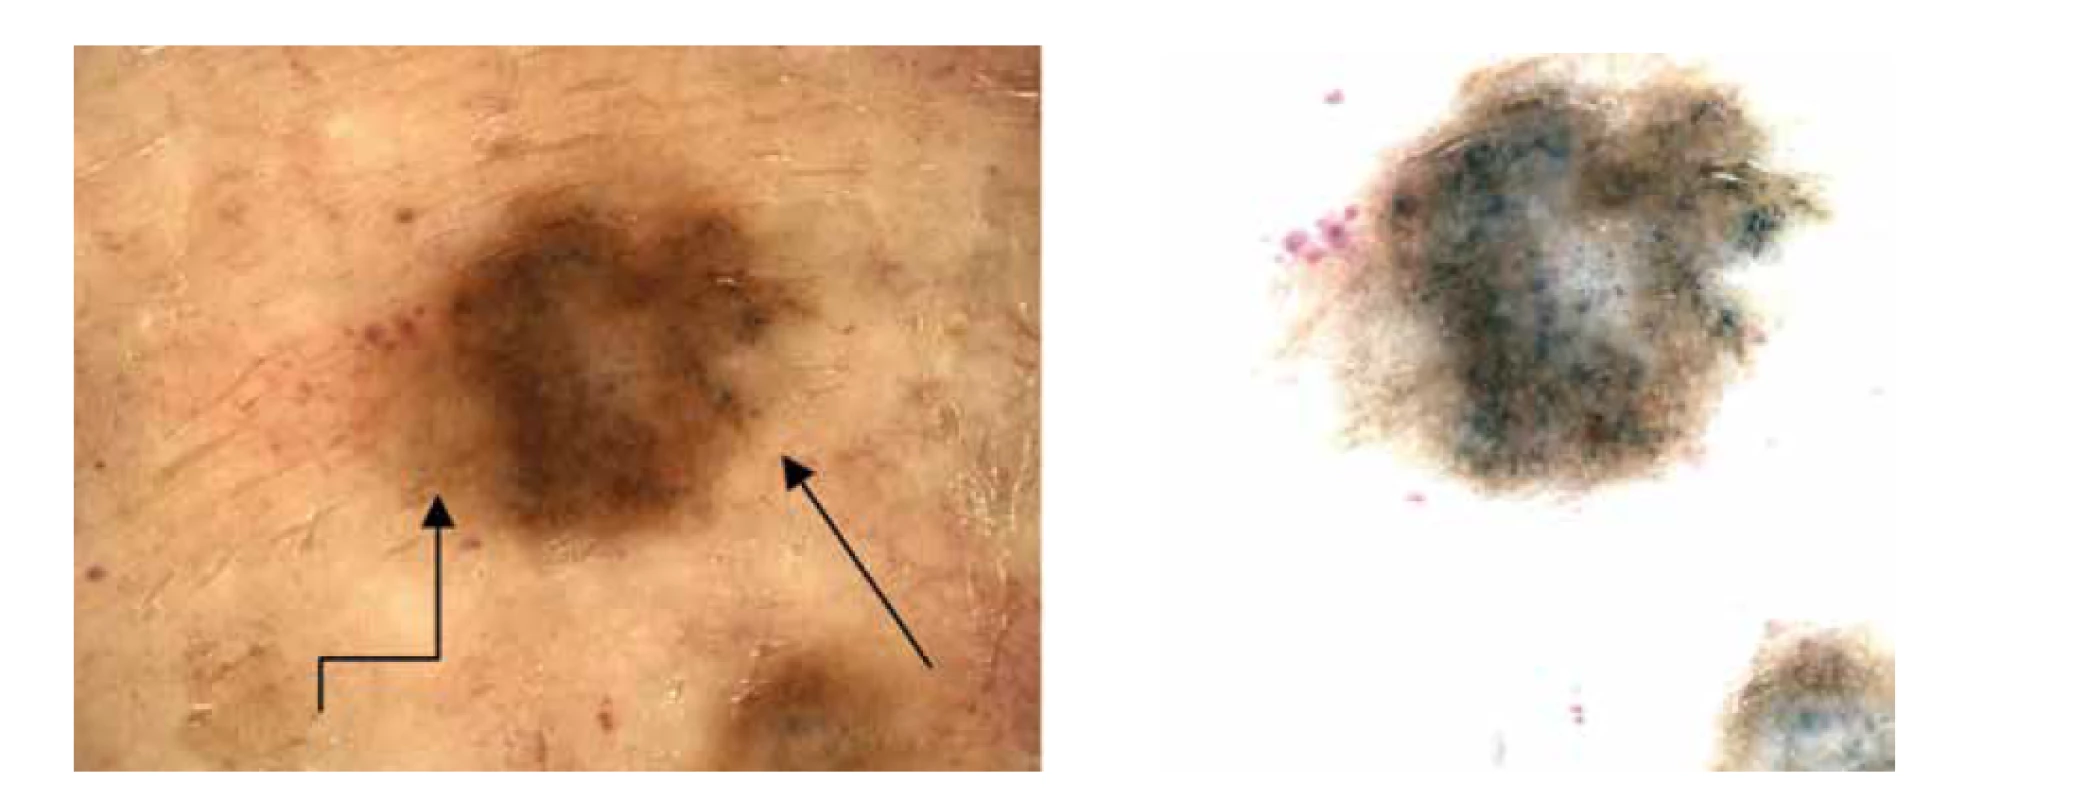 a,b. Dermatoskopicky heterogenní obraz – hnědé globule asymetricky, šedočerné tečky na pravém okraji (šipka),
diskrétní pigmentová síť na levém okraji (lomená šipka).